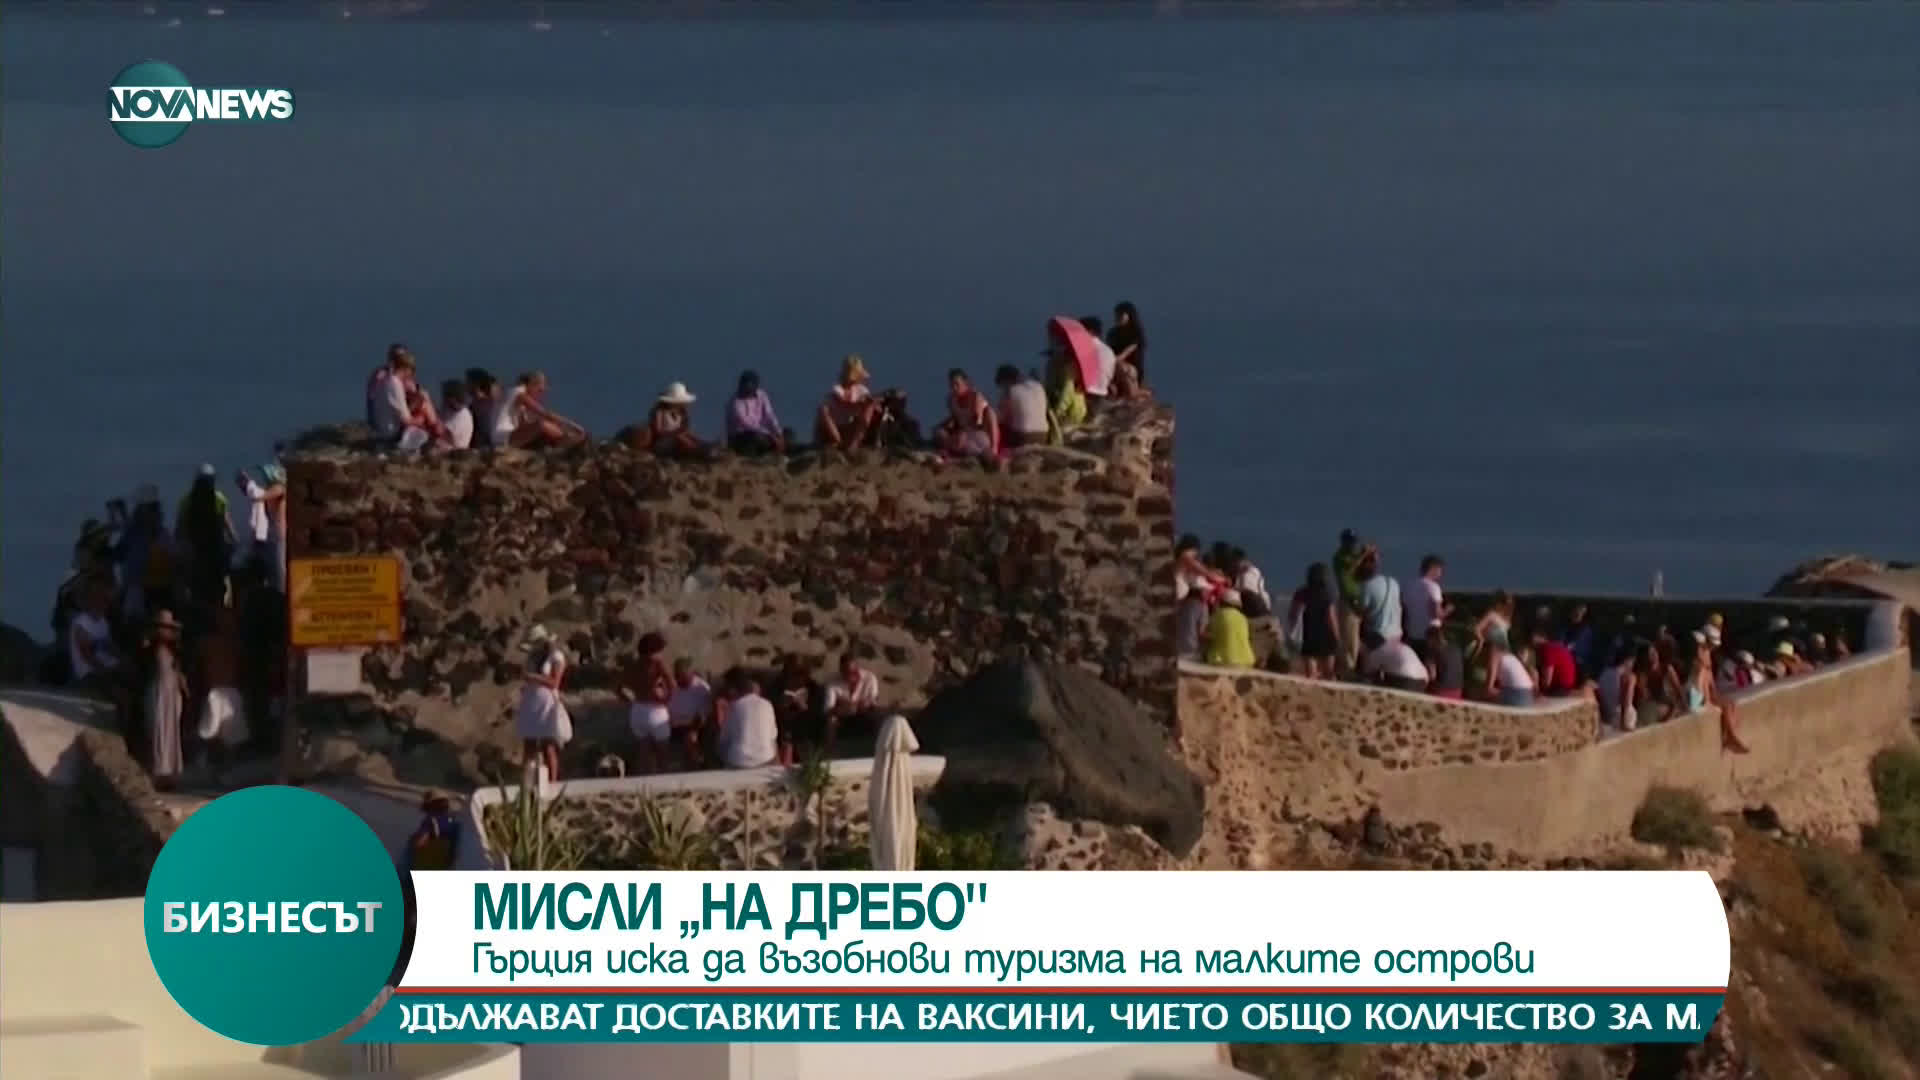 МИСЛИ "НА ДРЕБНО": Гърция иска да възобнови туризма на малките острови